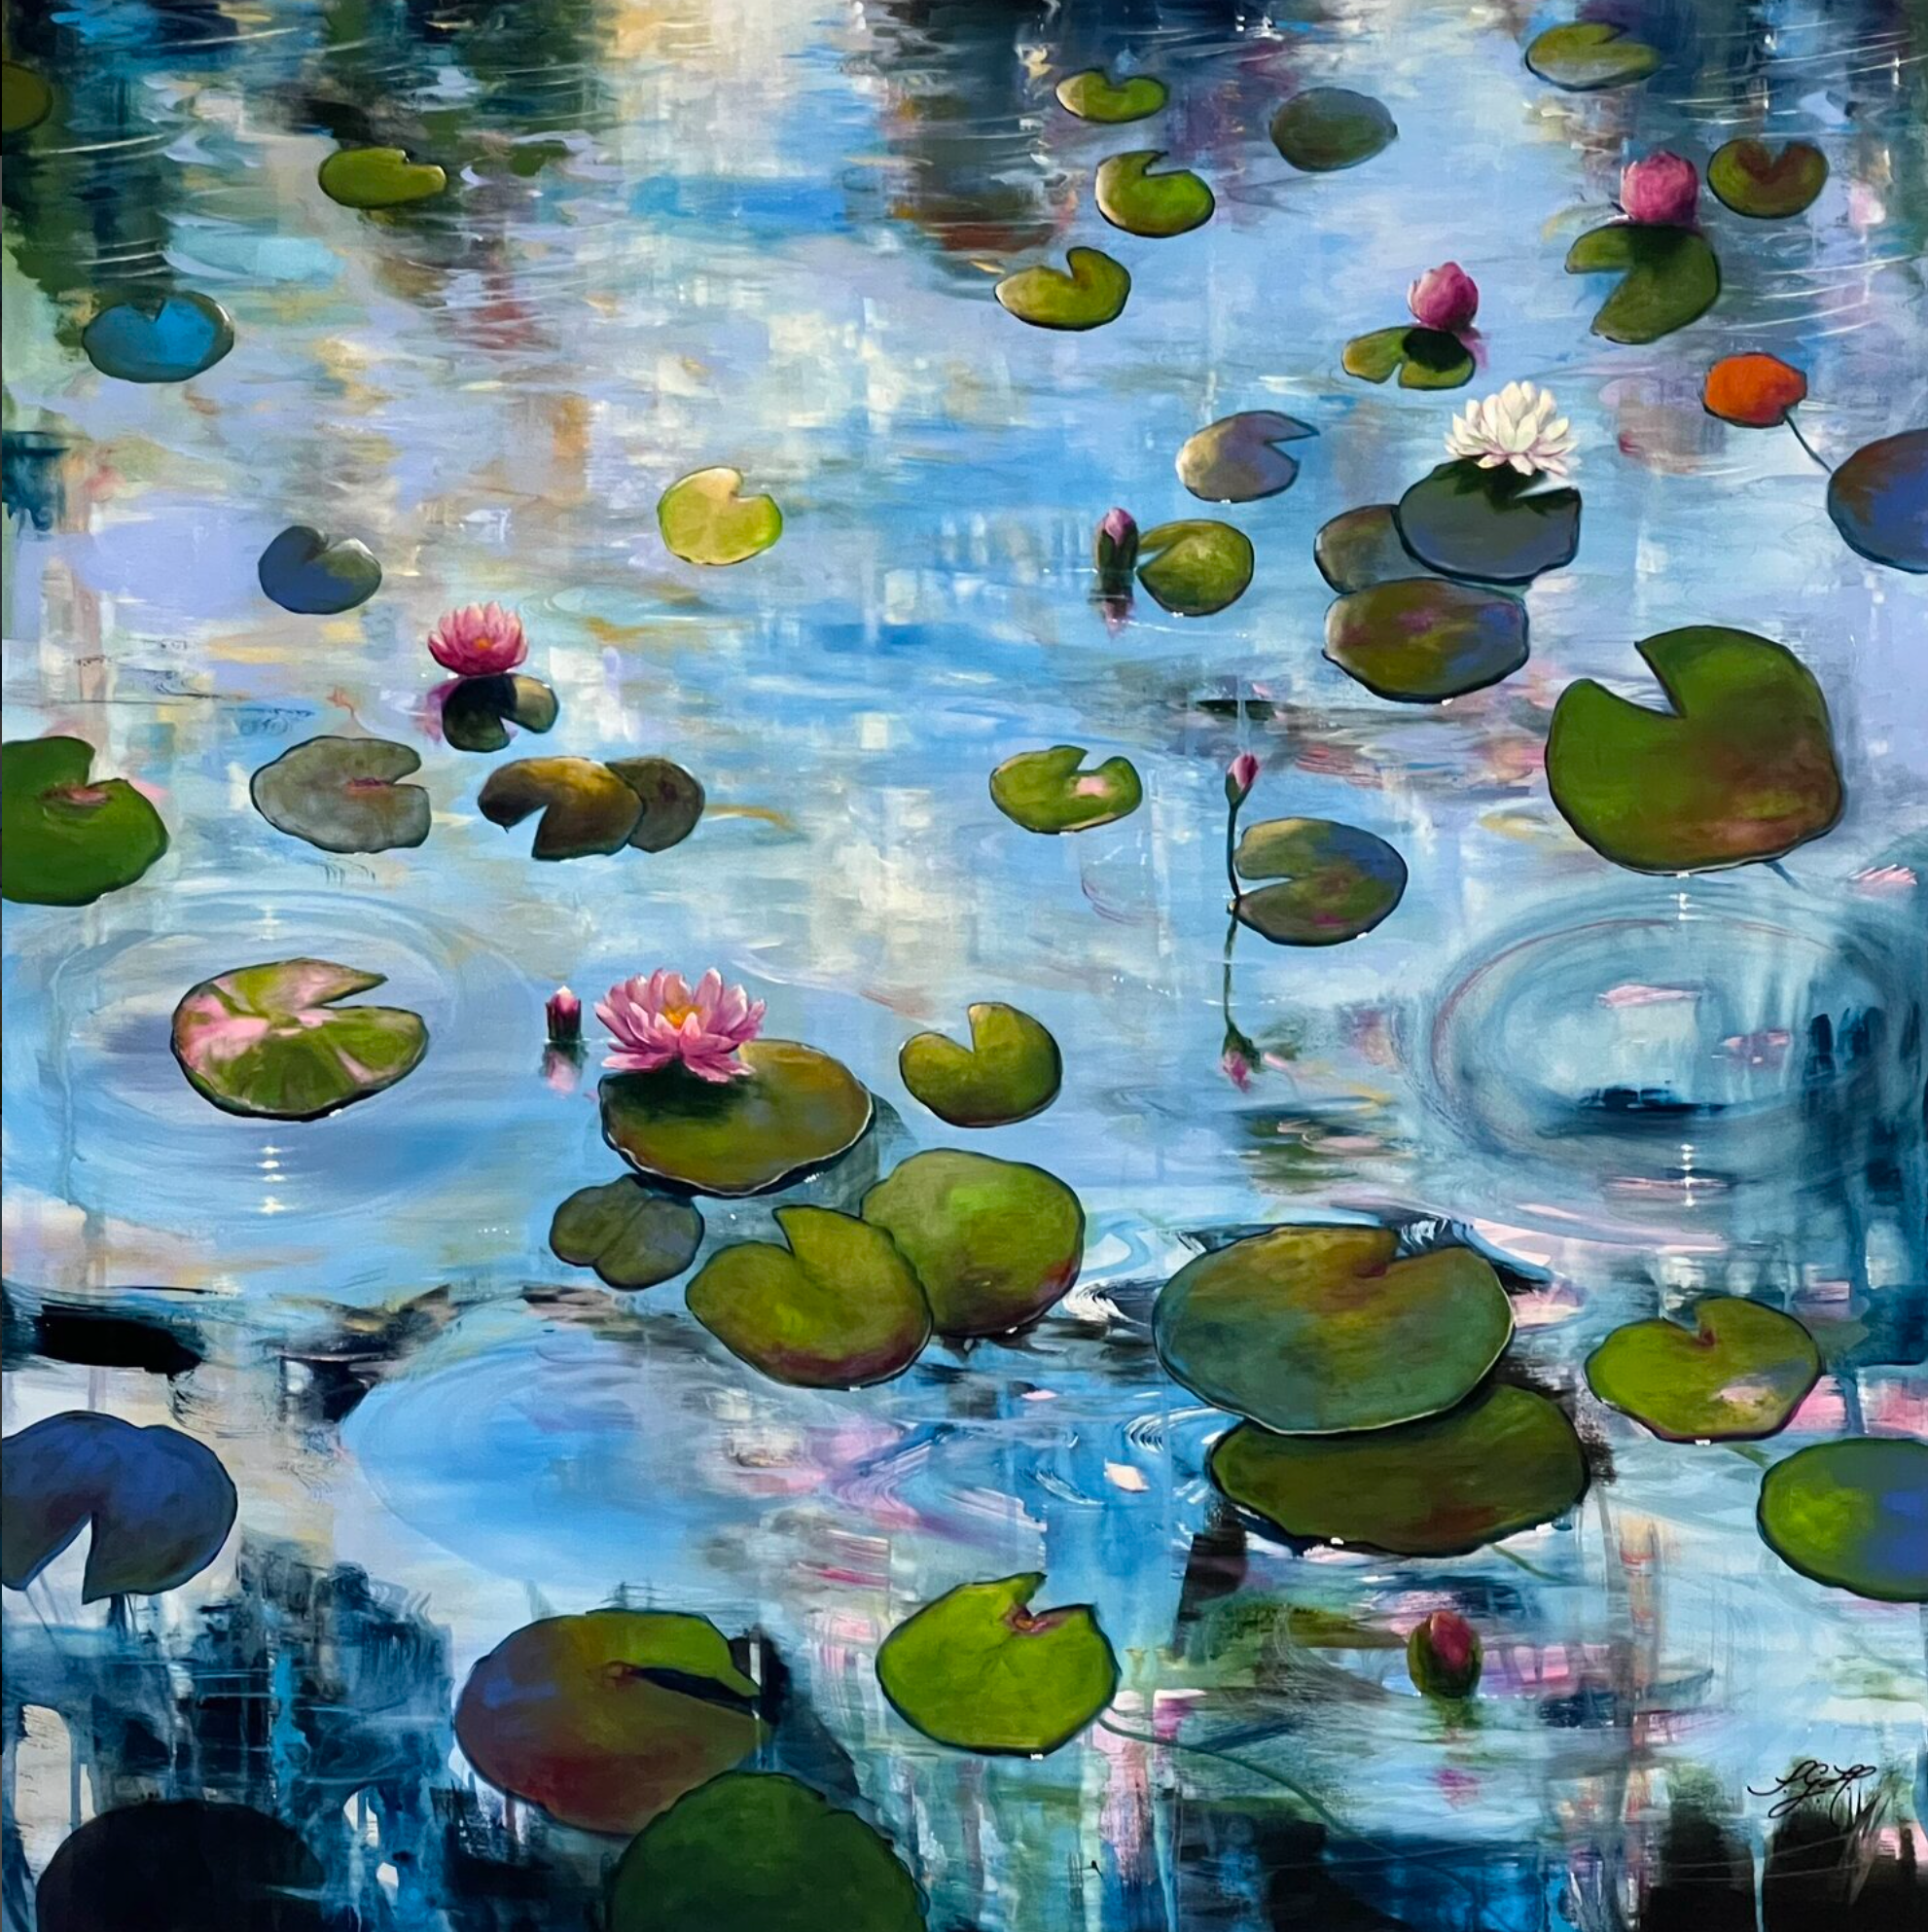 Le tableau coloré de Sandra Gebhardt-Hoepfner "Always Waterlilies 4" montre des nénuphars flottant au-dessus de l'eau qui se déplace doucement sous le soleil. La lumière se reflète paisiblement et en dansant à la surface de l'eau et scintille par endroits.